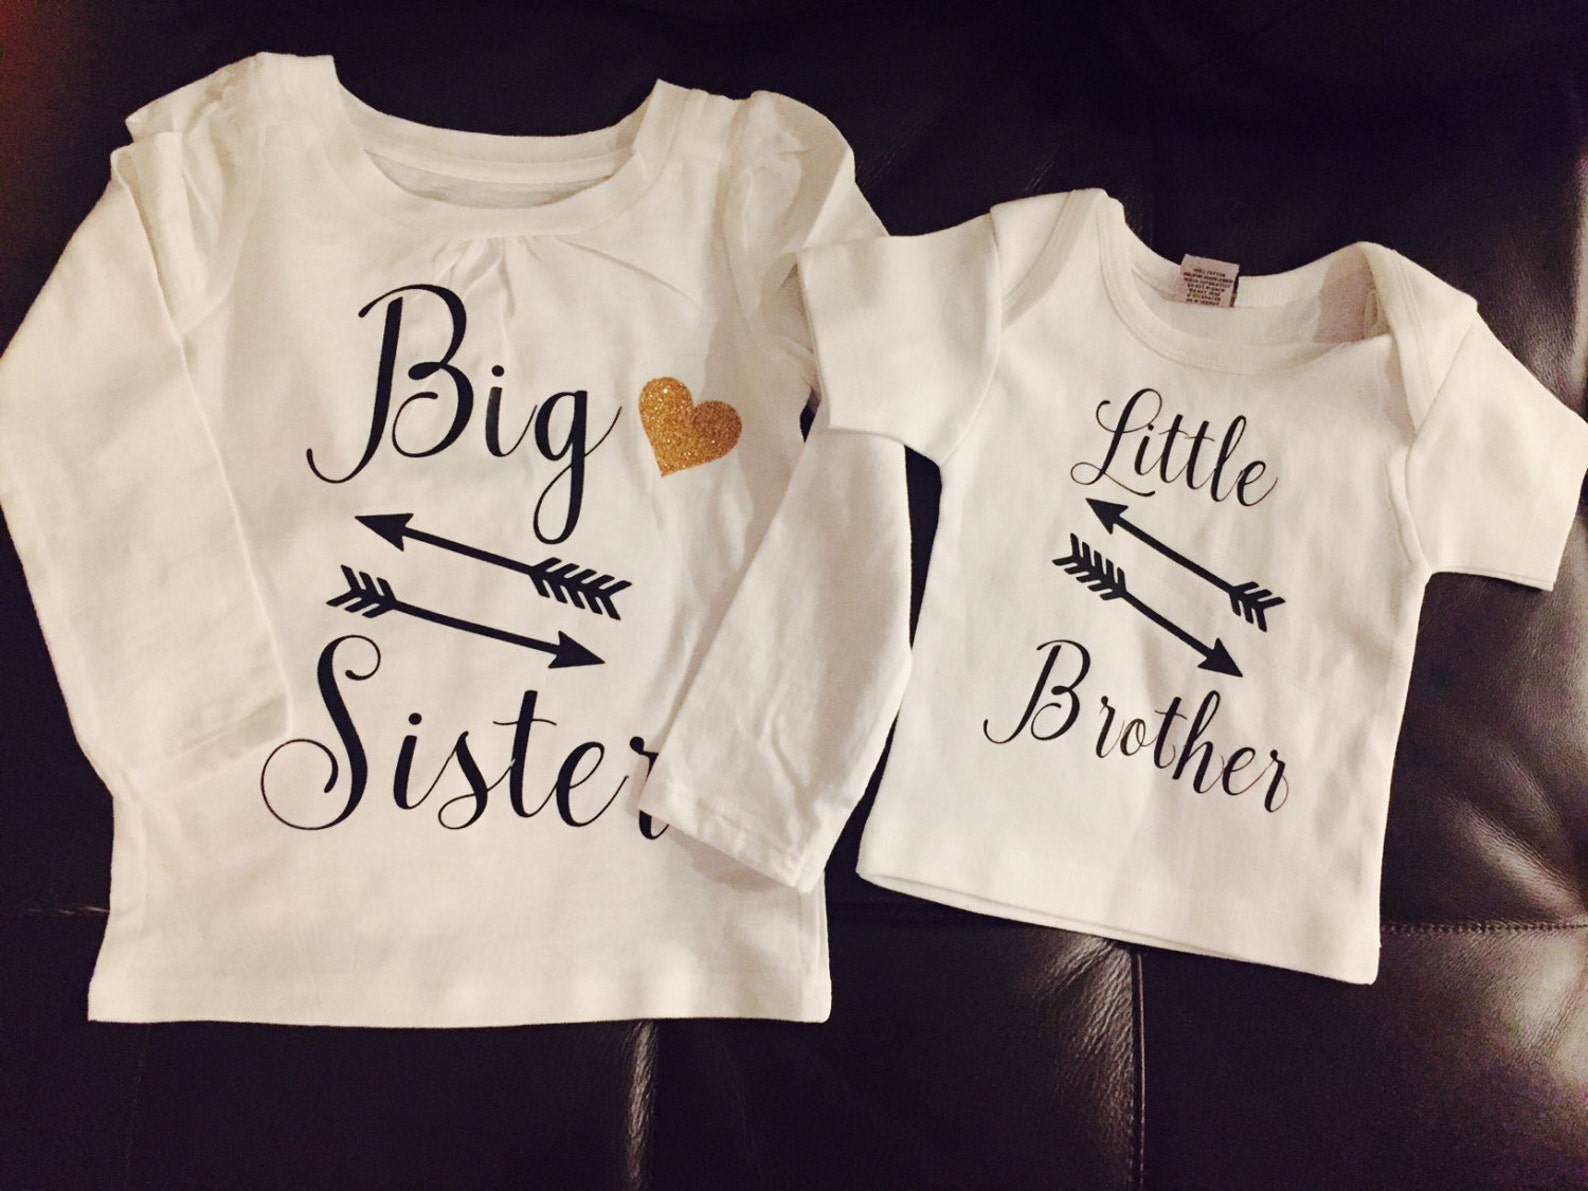 Big Sister Little Brother set | Etsy